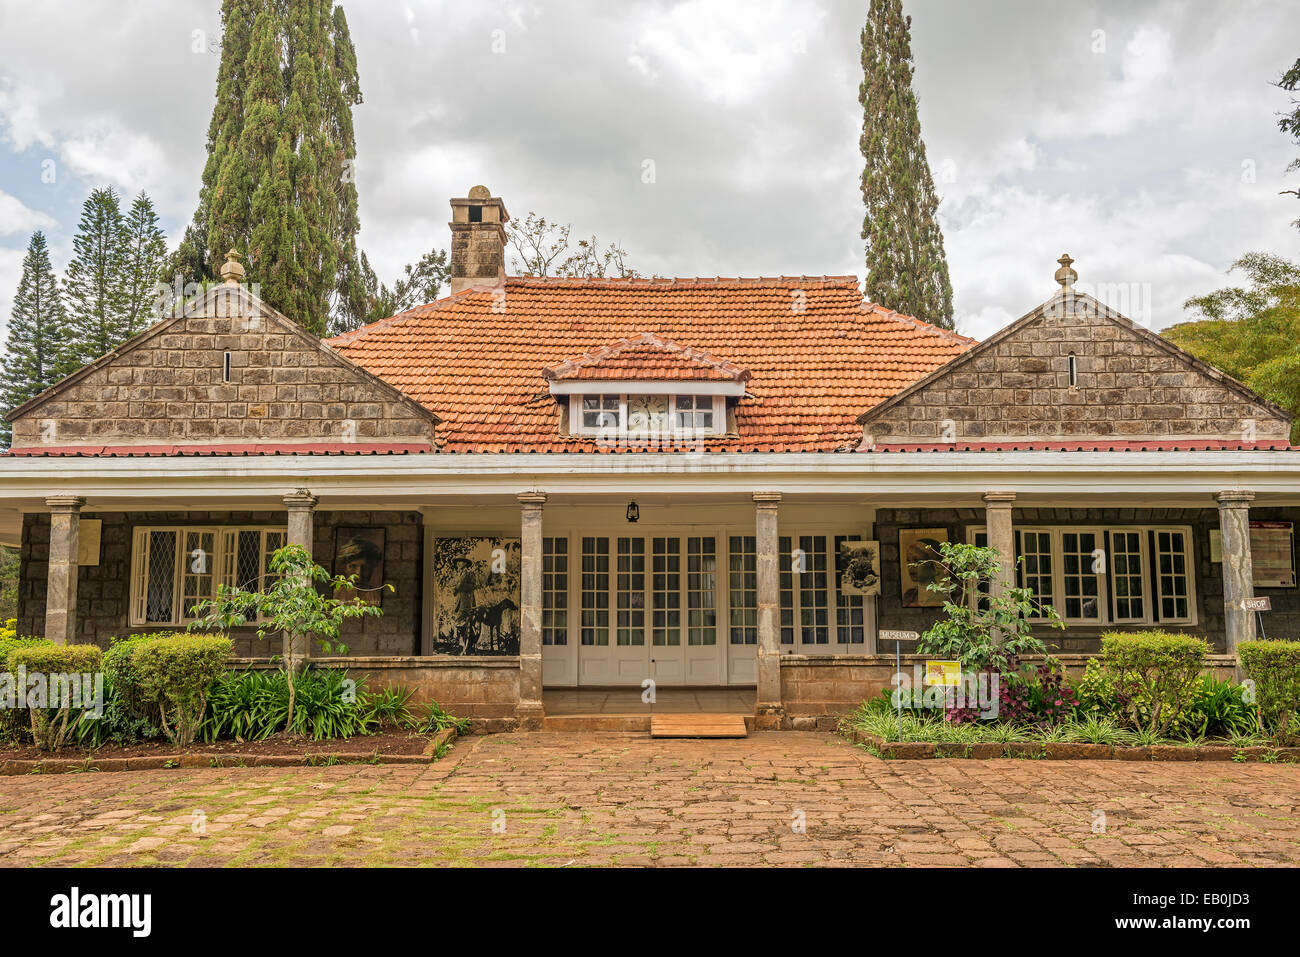 Musée de Karen Blixen. Blixen était un auteur danois le plus connu pour hors de l'Afrique, son récit de la vie au Kenya. Banque D'Images